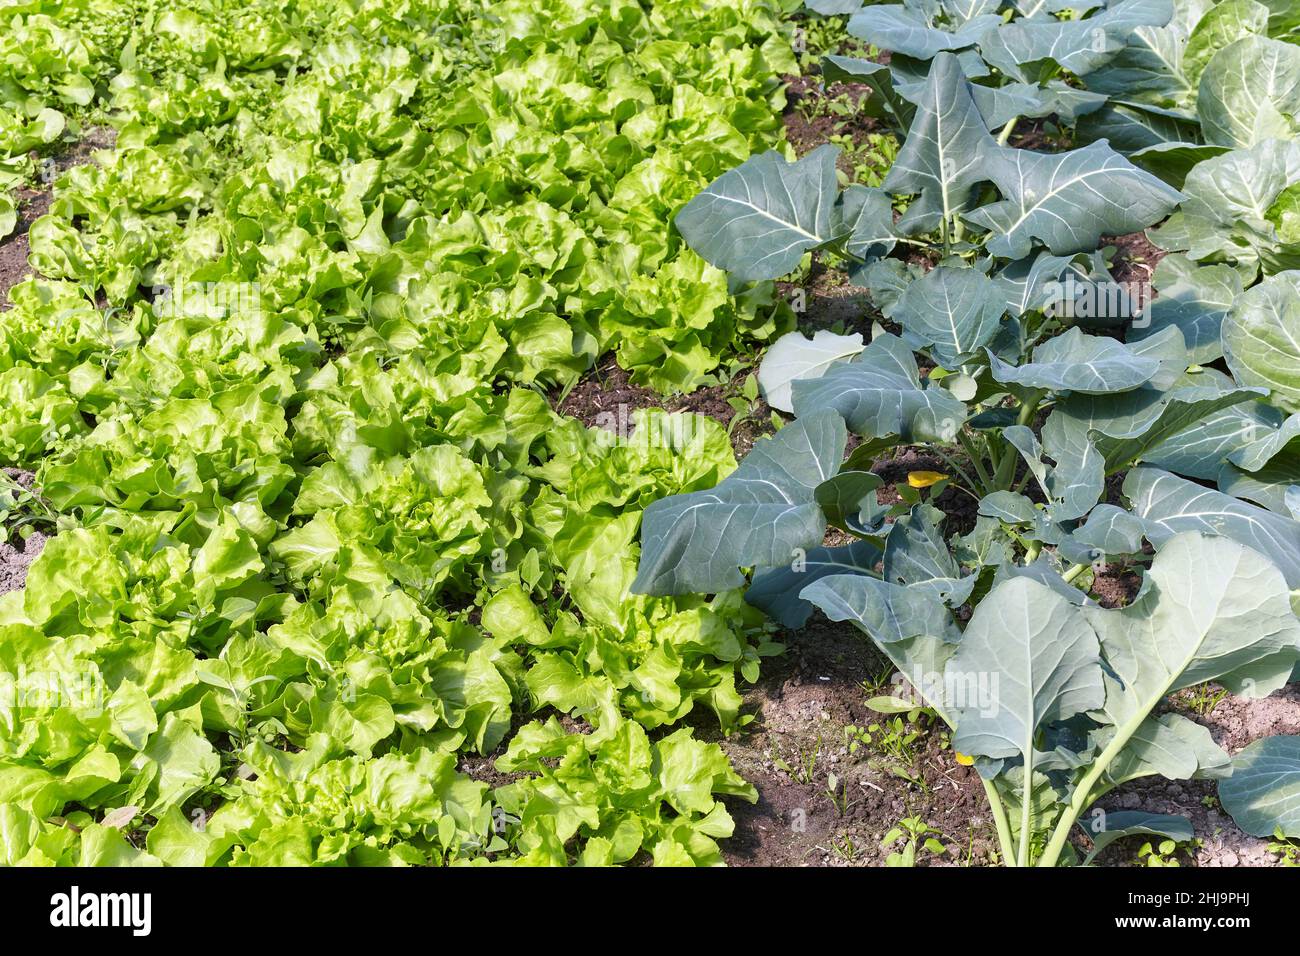 Plantation biologique de légumes à feuilles vertes, concentration sélective. Banque D'Images